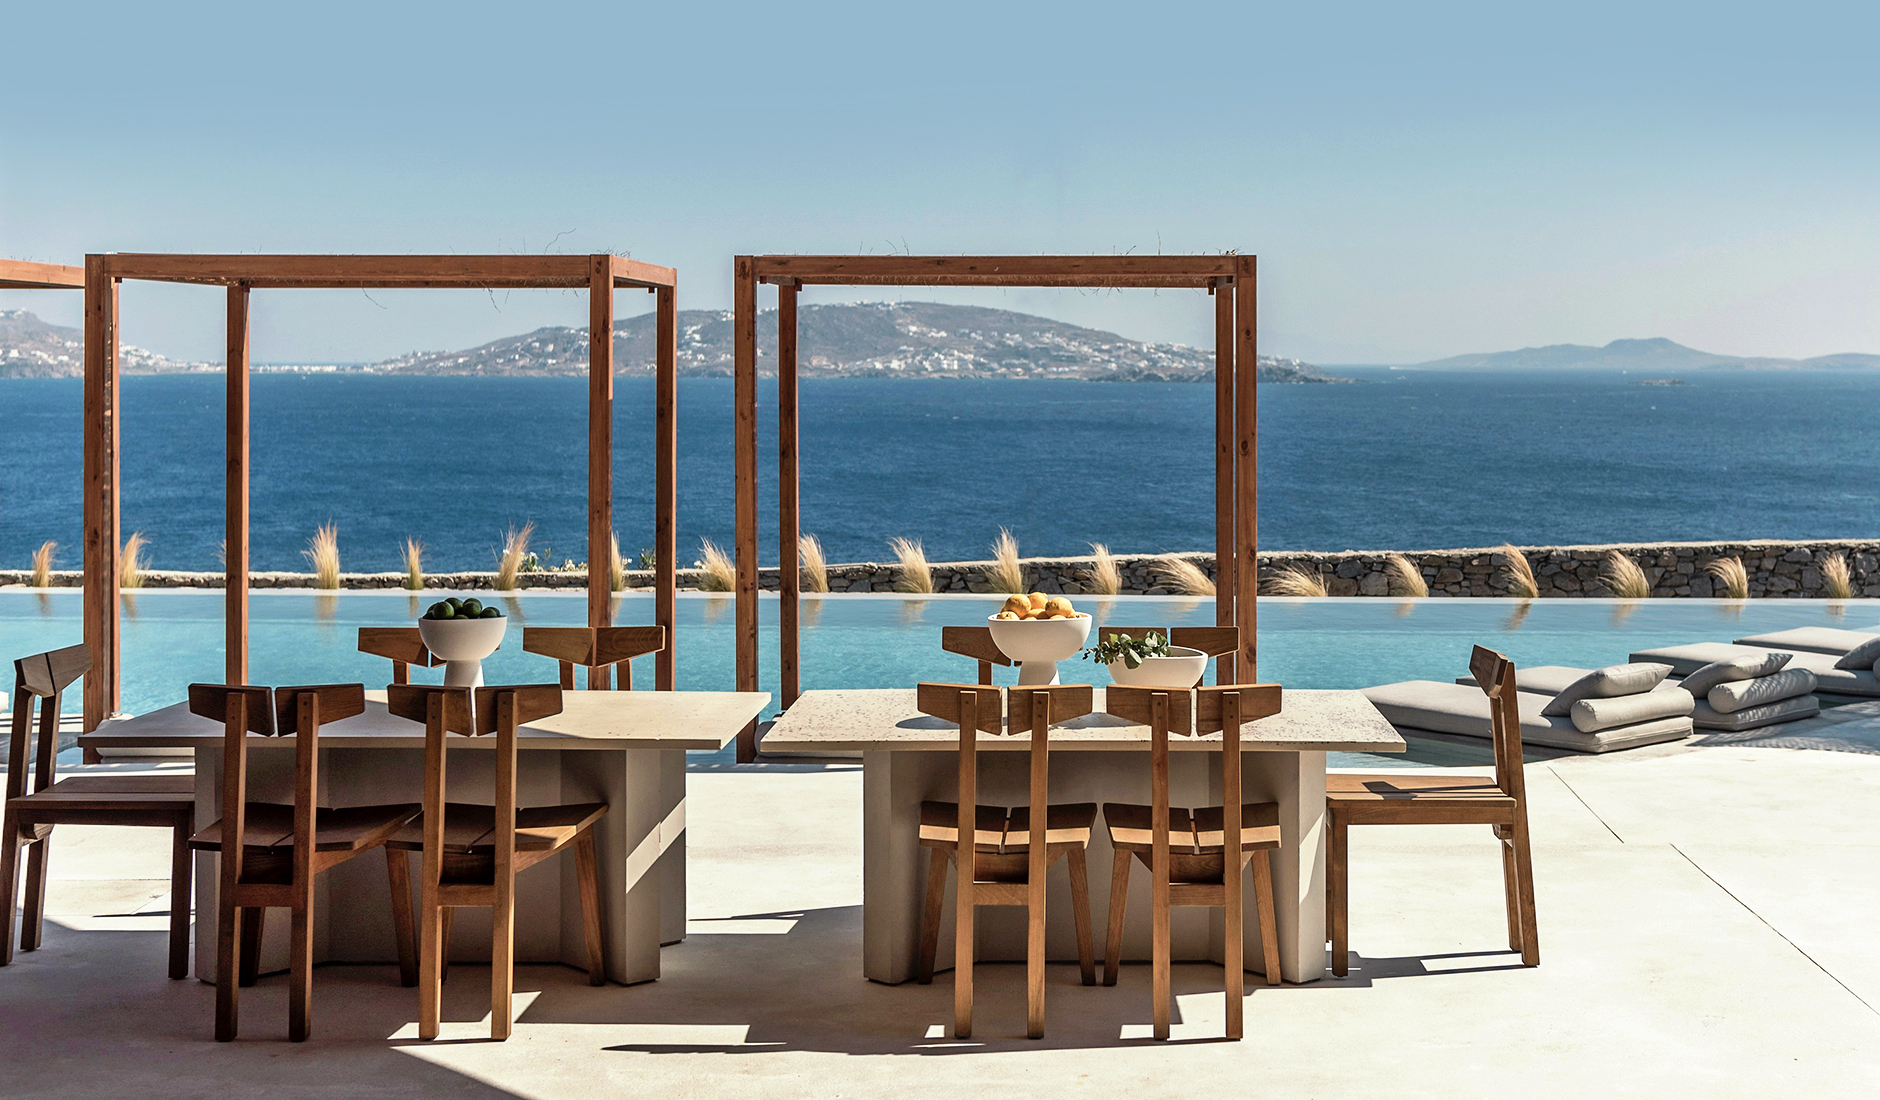 Rocabella Mykonos Hotel, Mykonos, Greece. The Best Luxury Hotels In Mykonos. TravelPlusStyle.com